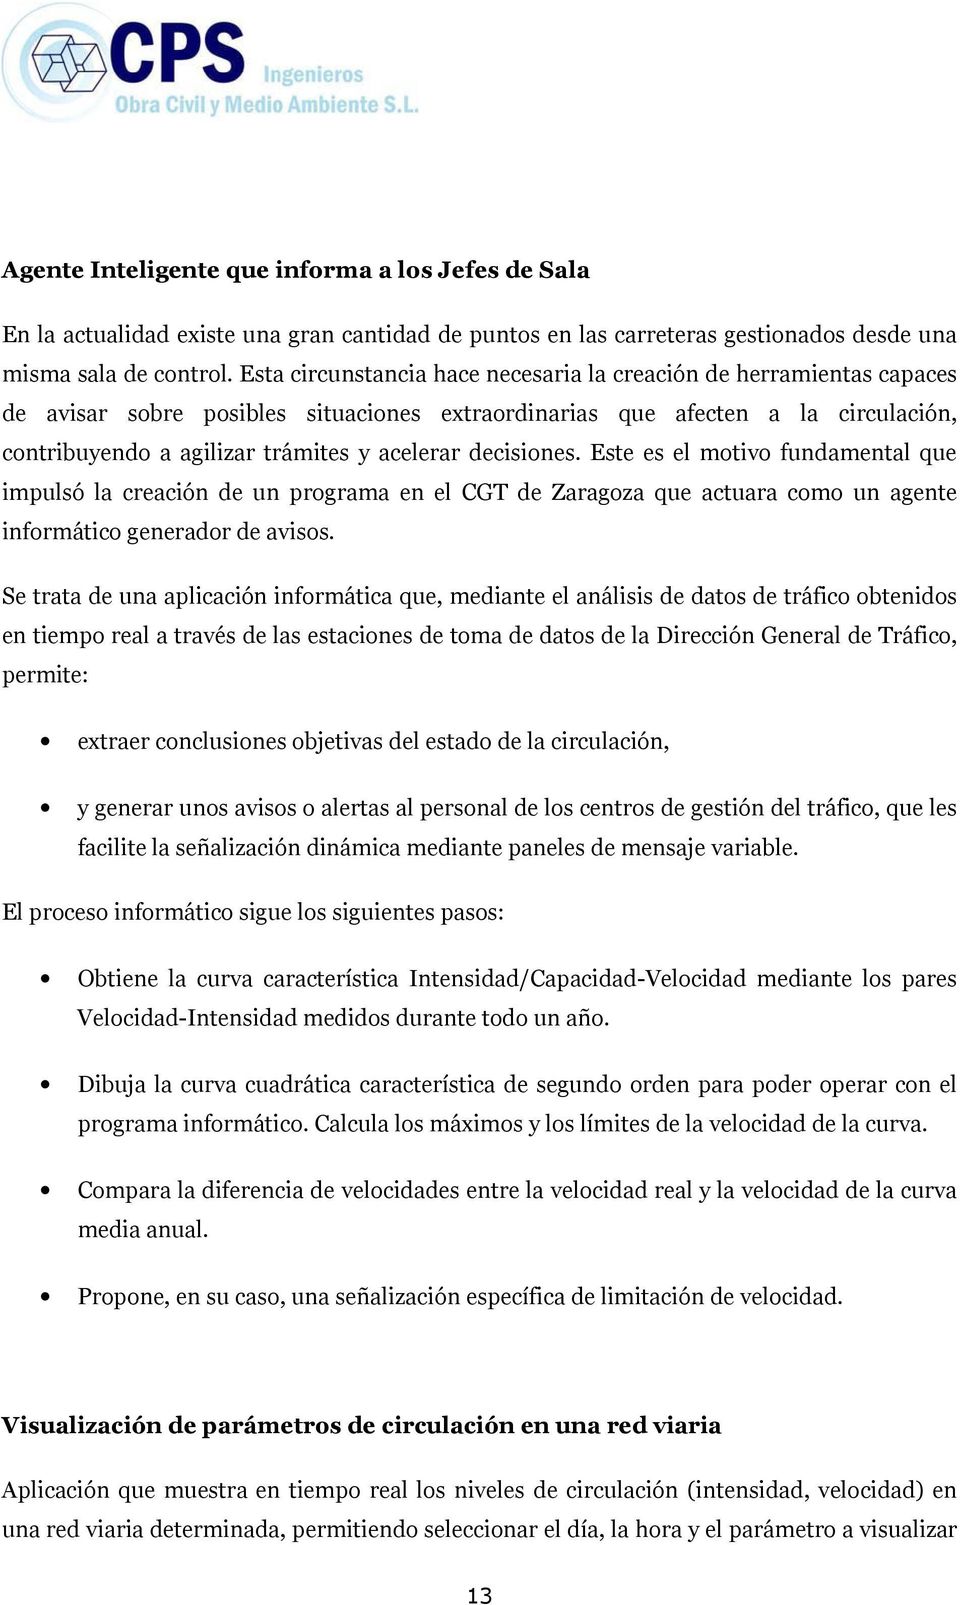 decisiones. Este es el motivo fundamental que impulsó la creación de un programa en el CGT de Zaragoza que actuara como un agente informático generador de avisos.